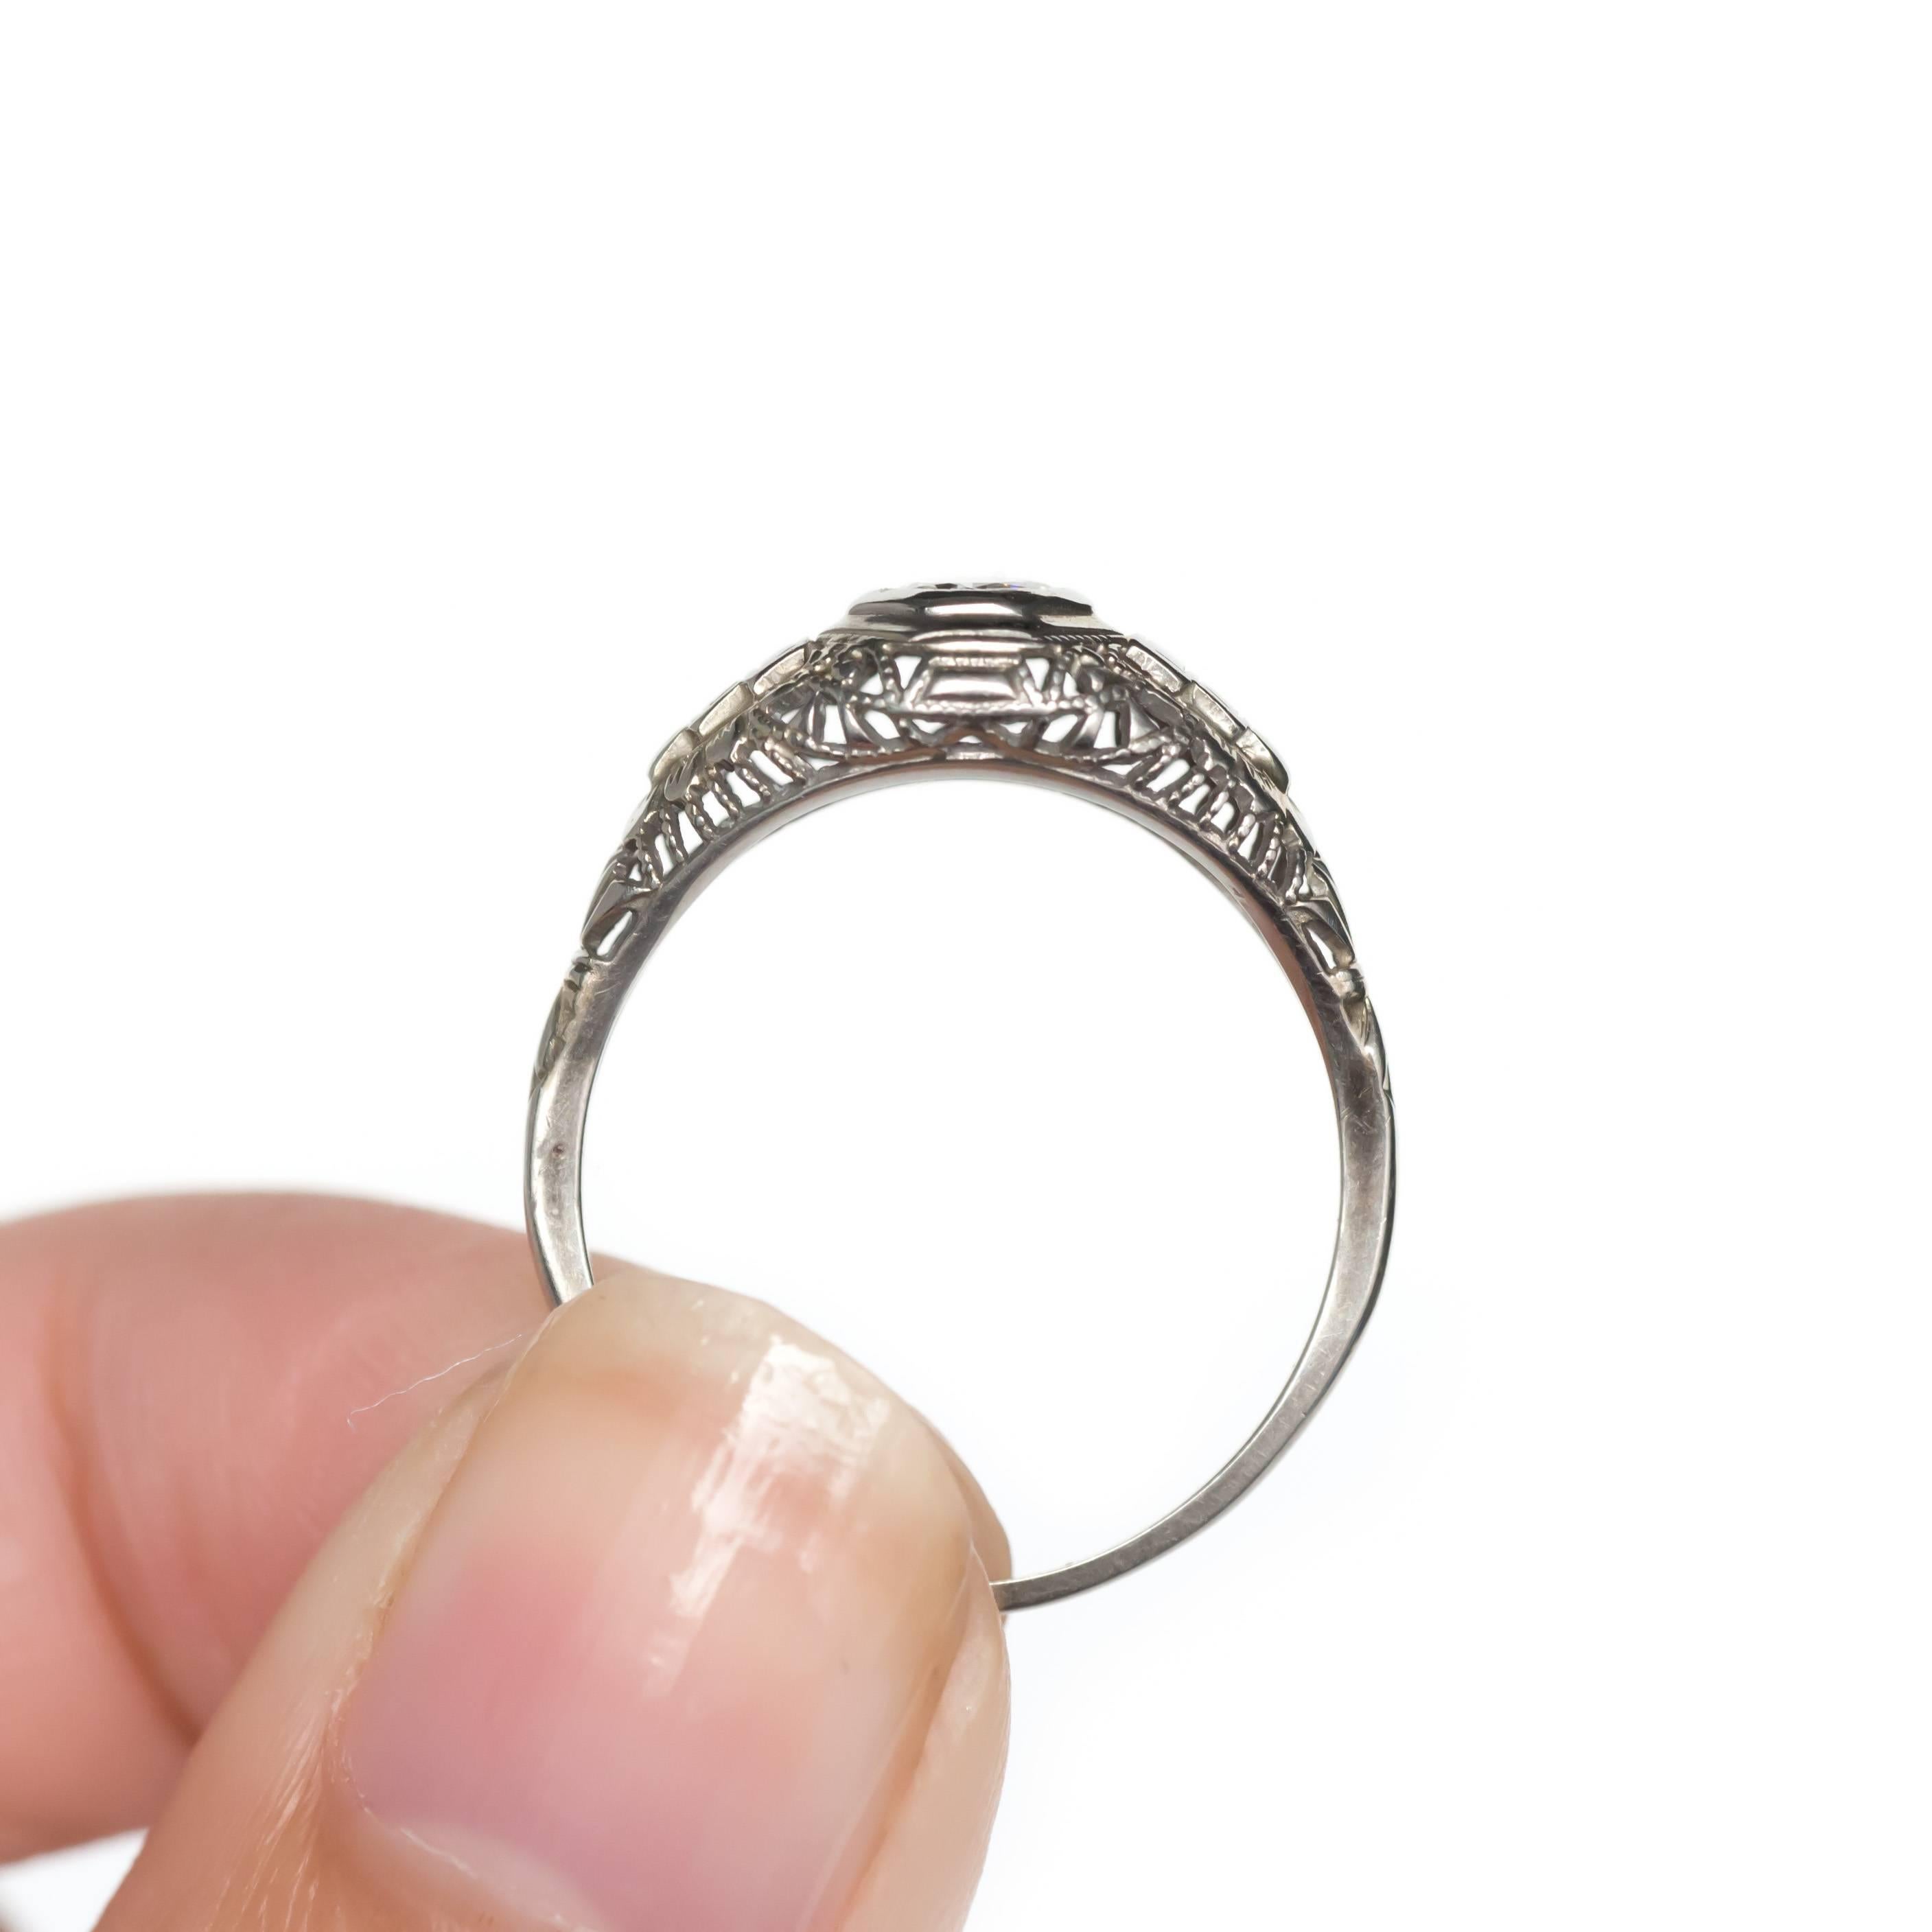 .25 carat engagement ring